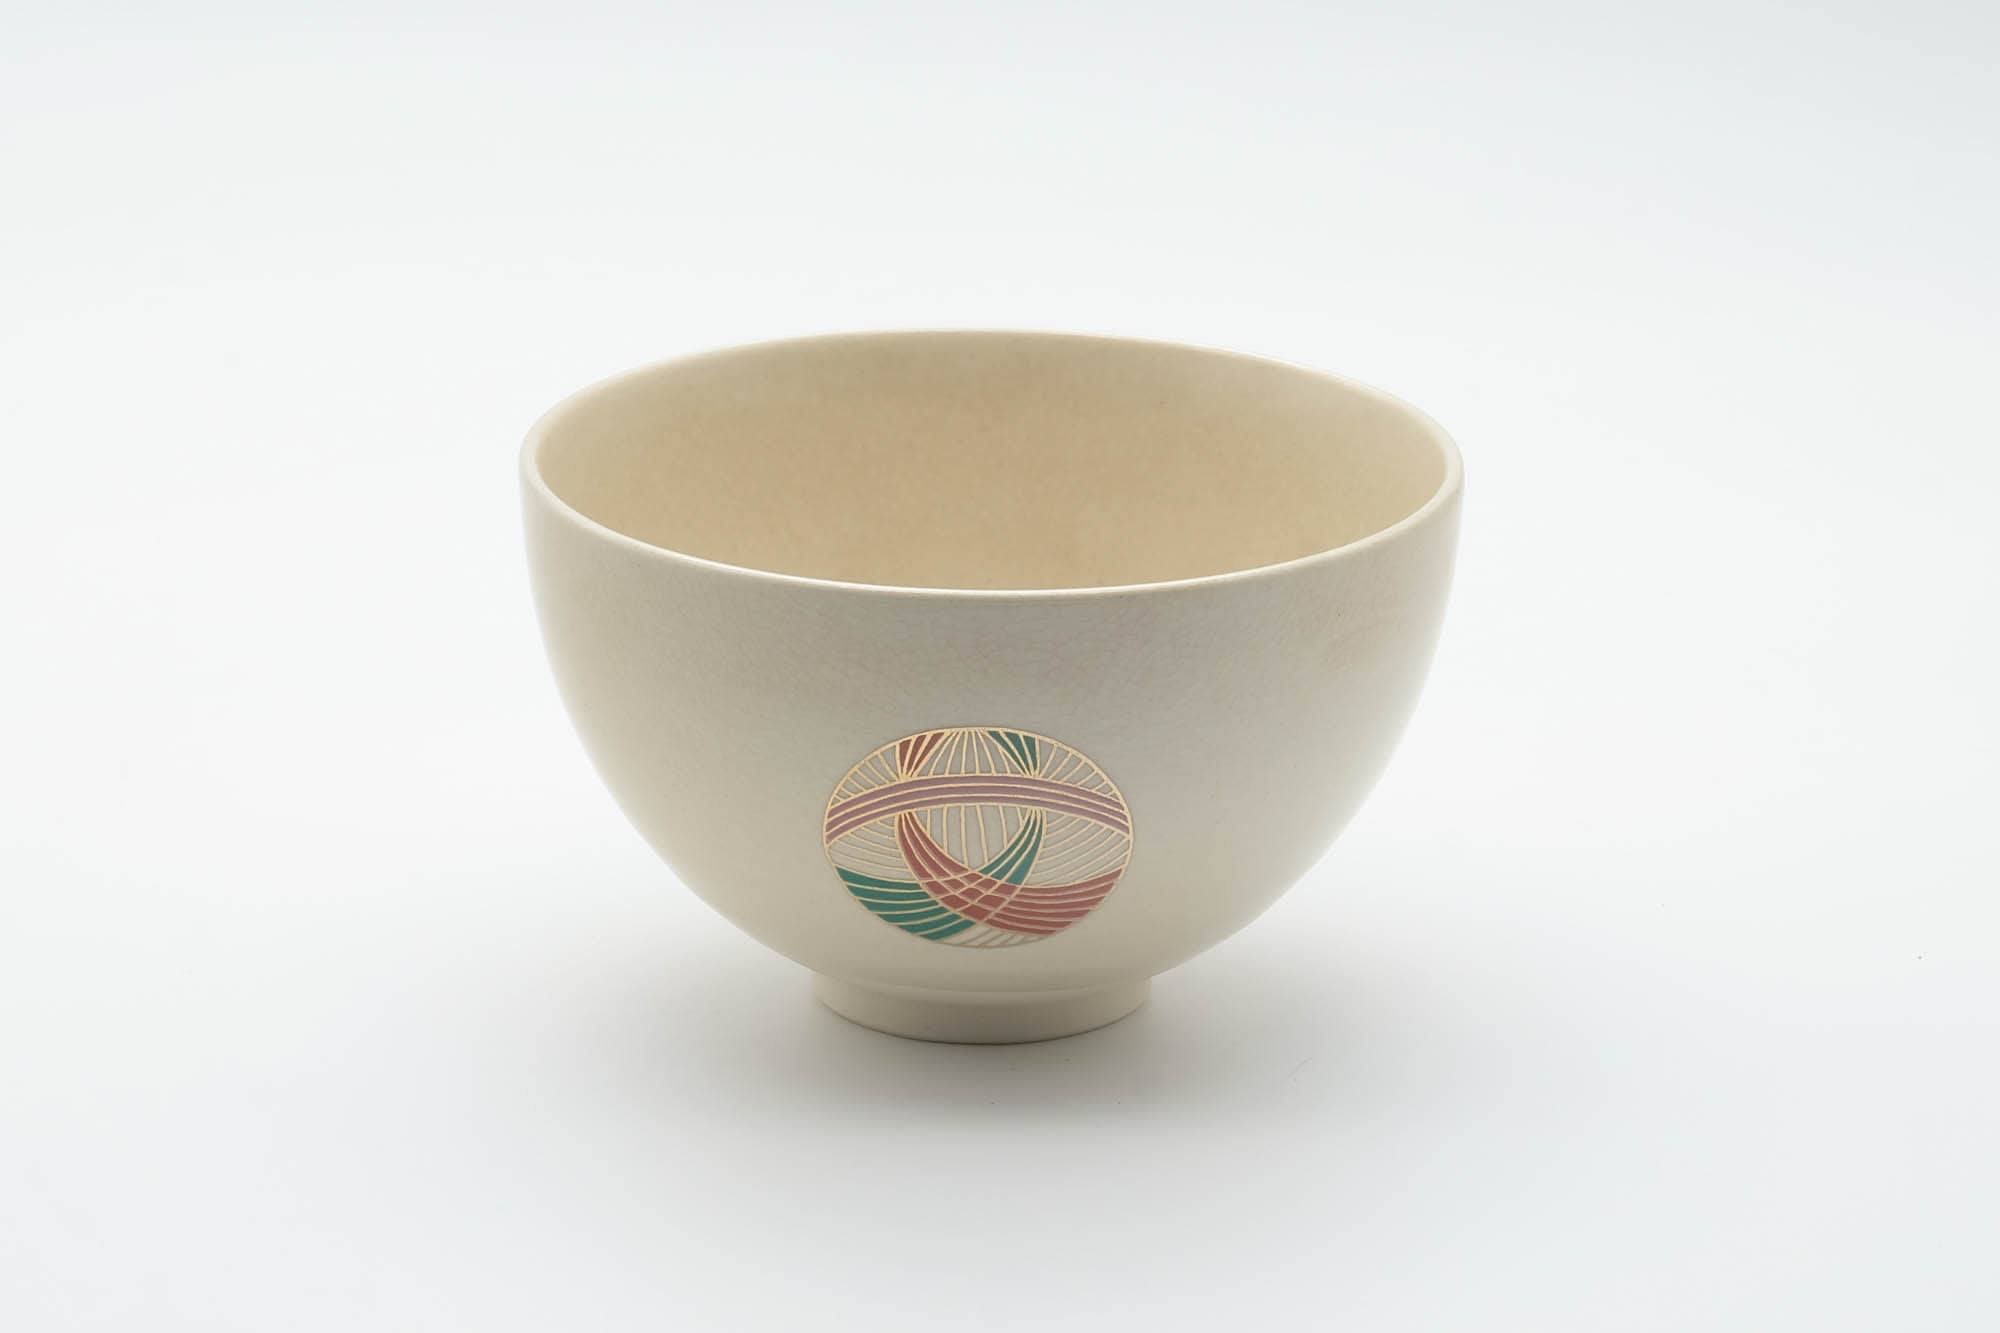 Japanese Matcha Bowl - Geometric Emblemed Kyo-yaki Chawan - 300ml